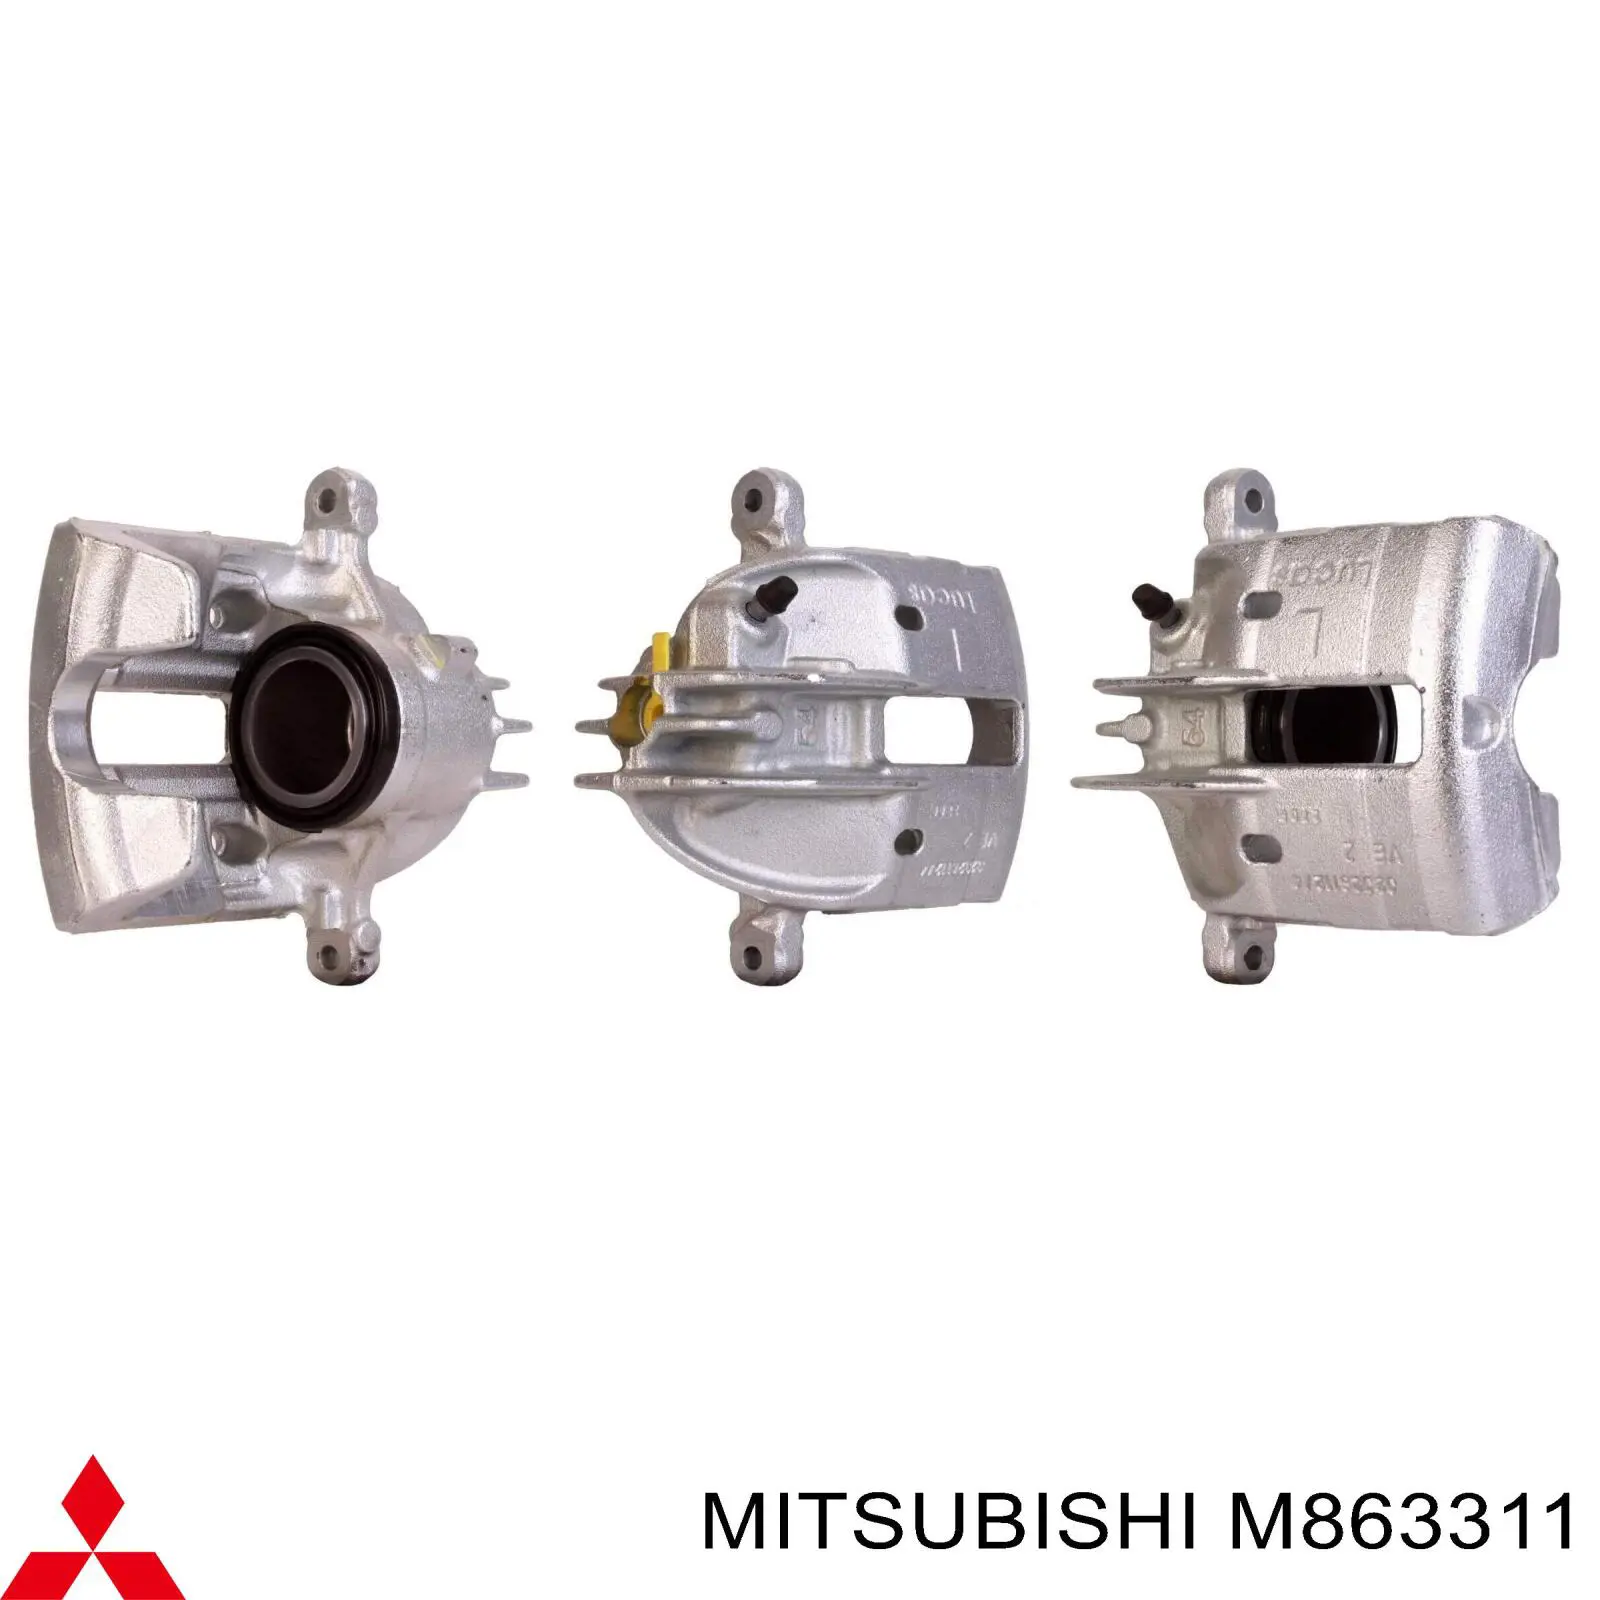 M863311 Mitsubishi pinza de freno delantera izquierda